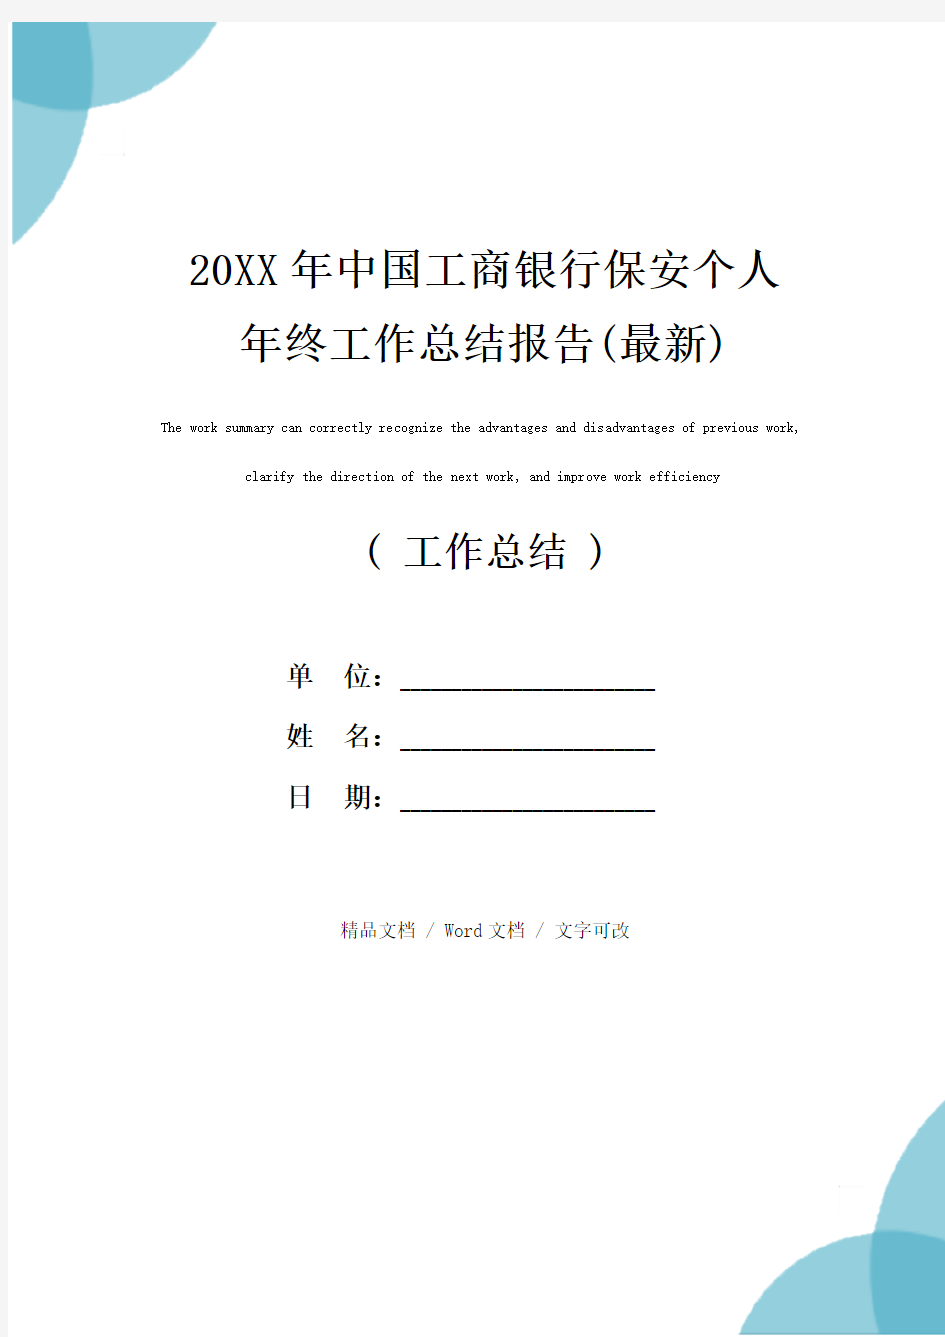 20XX年中国工商银行保安个人年终工作总结报告(最新)